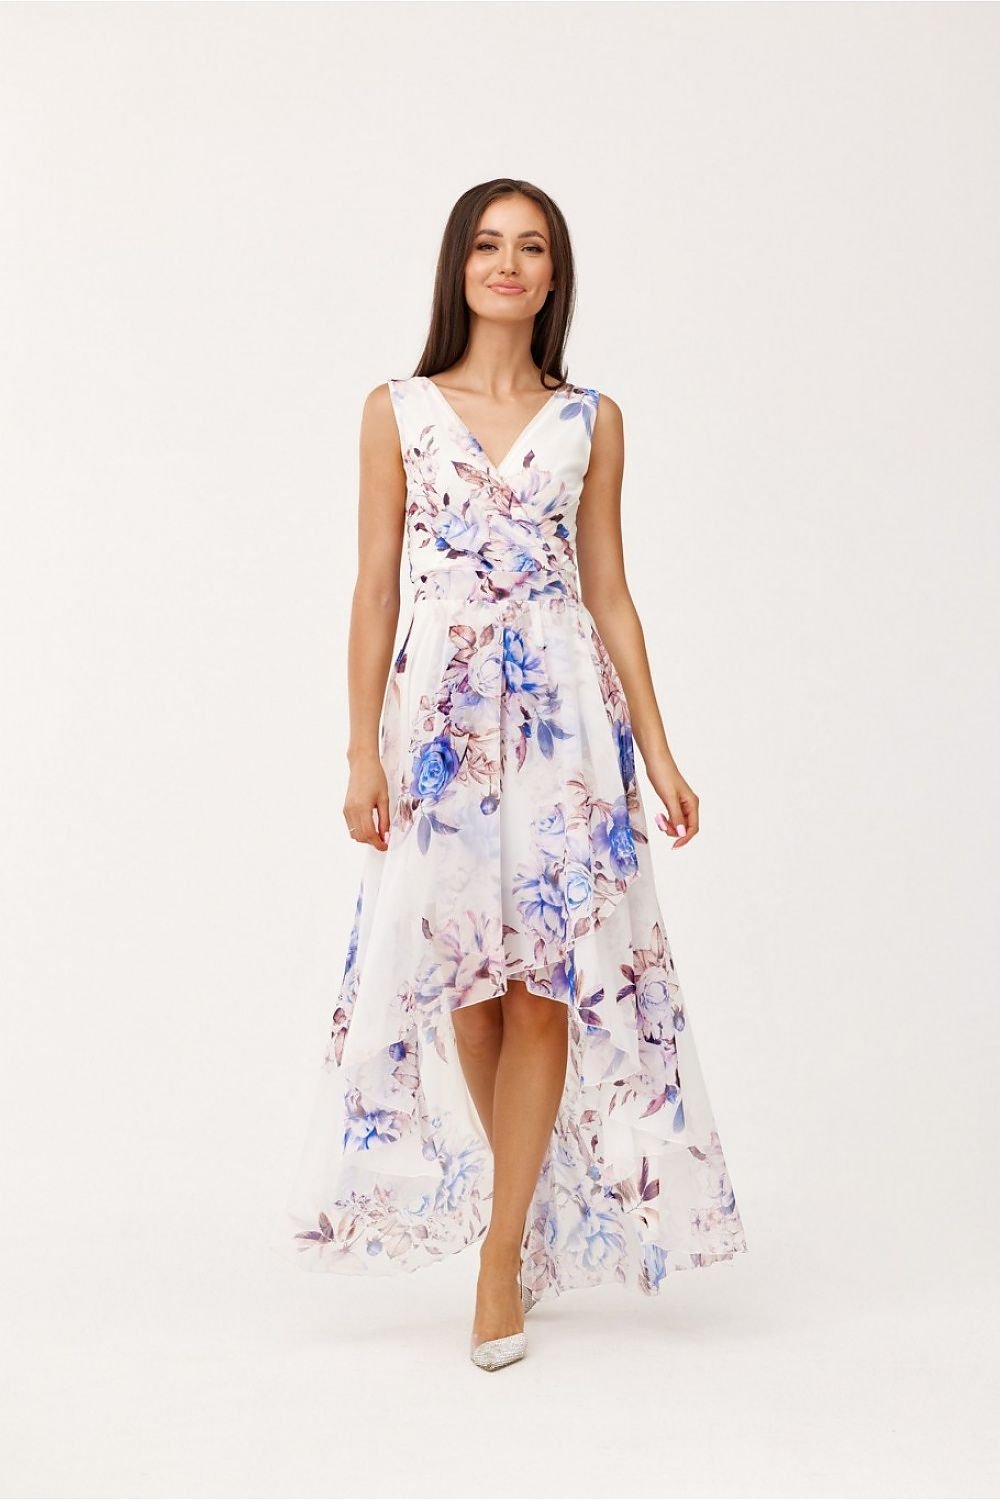 Fashionista Floral Print Maxi Dress